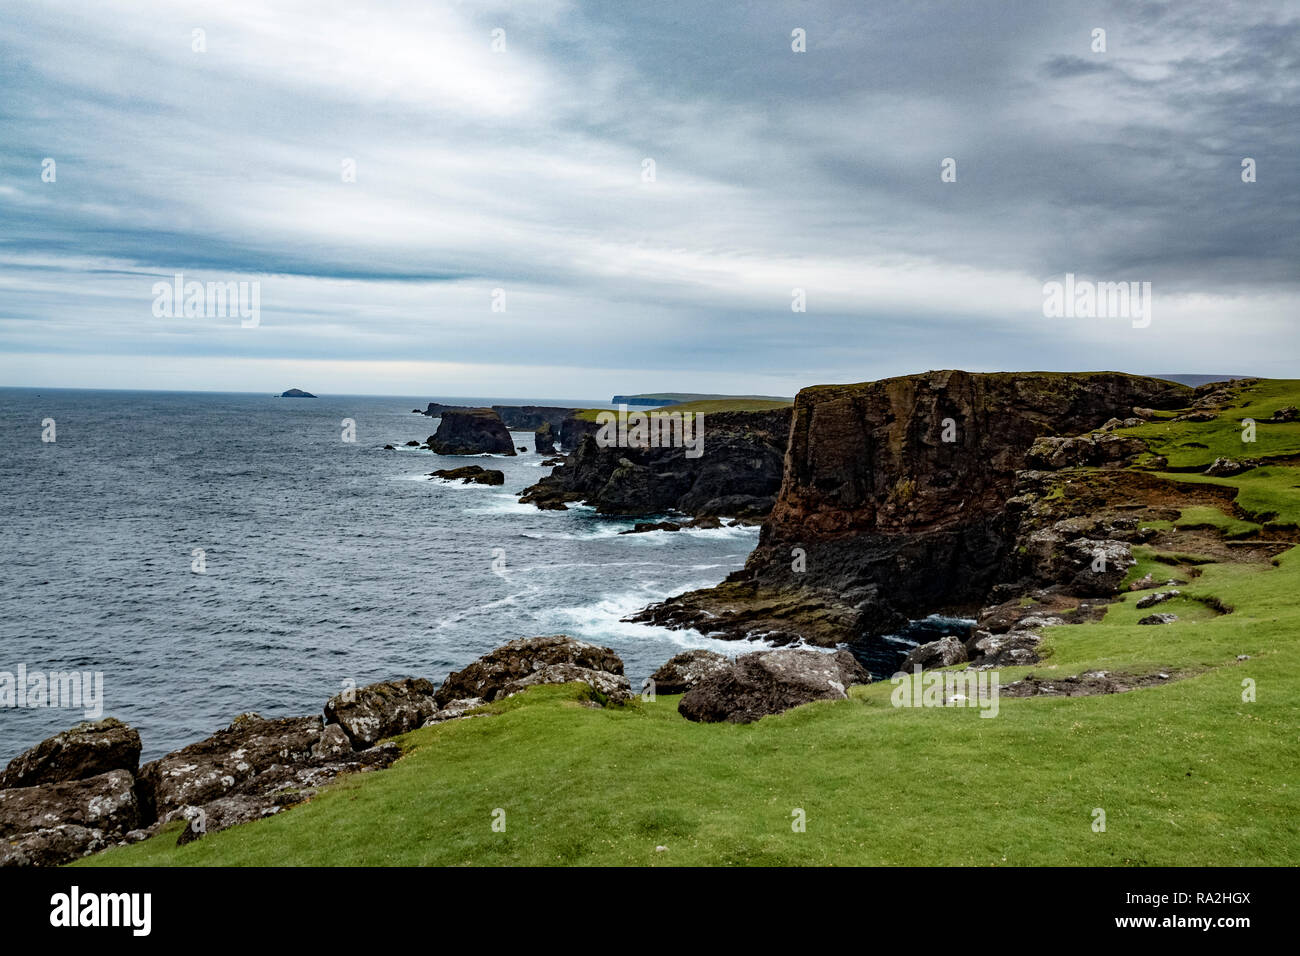 Les Rocheuses et la côte nord sauvage du Nord district re des îles Shetland, face à la puissance de l'Océan Atlantique Banque D'Images